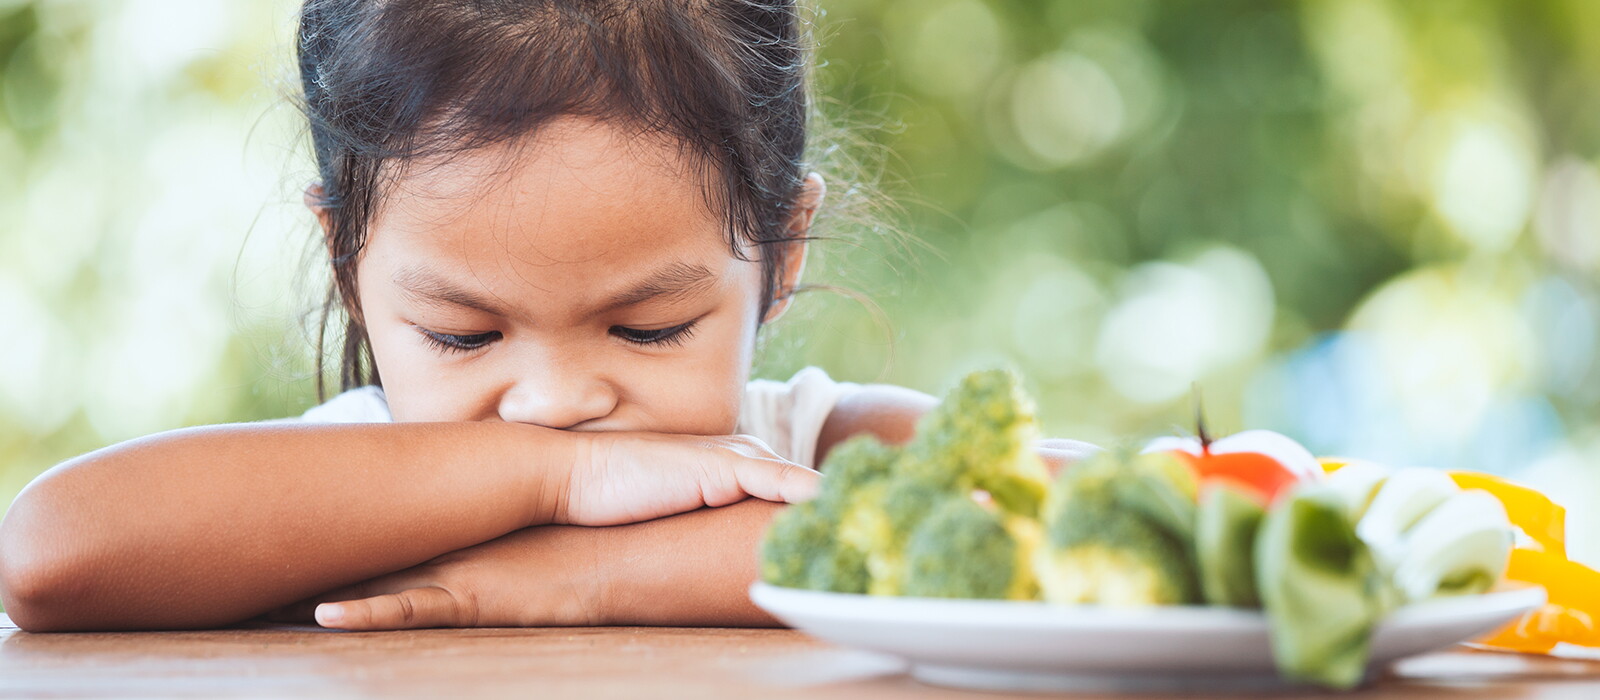 Bingung karena Anak Susah Makan? Ini Penyebab dan Cara Atasinya